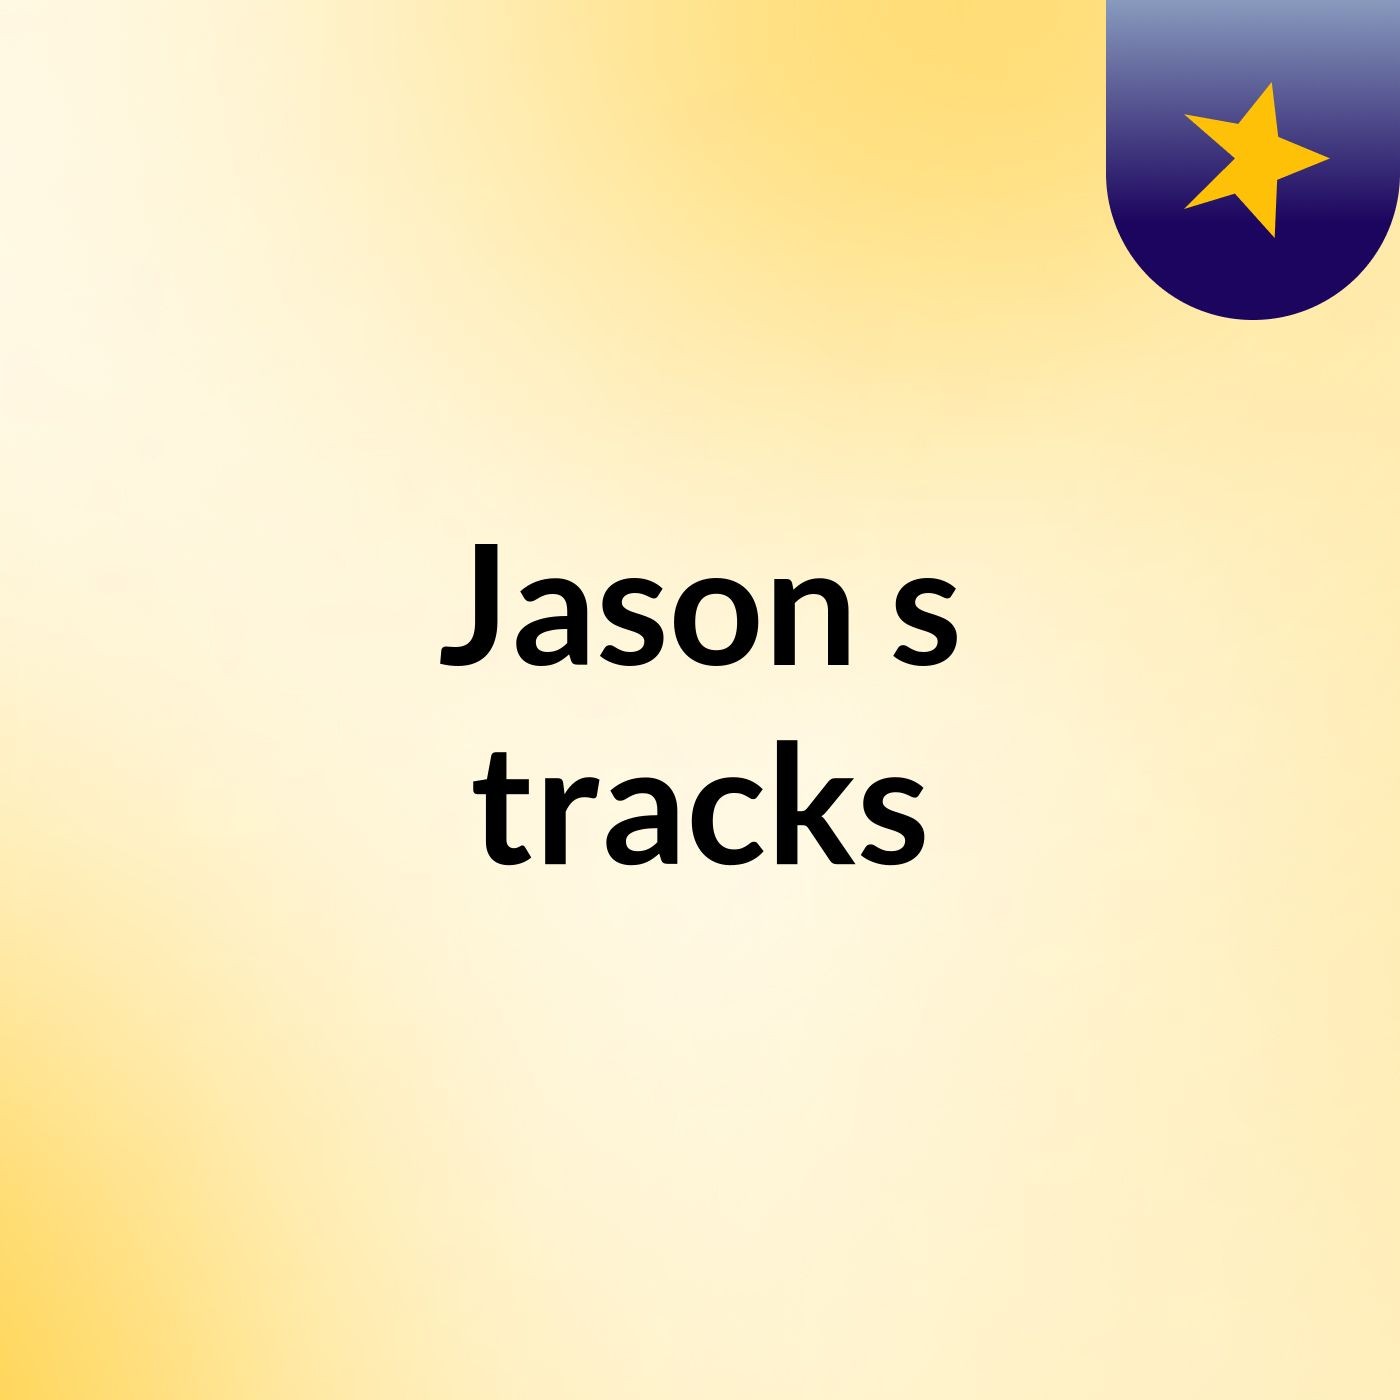 Jason's tracks